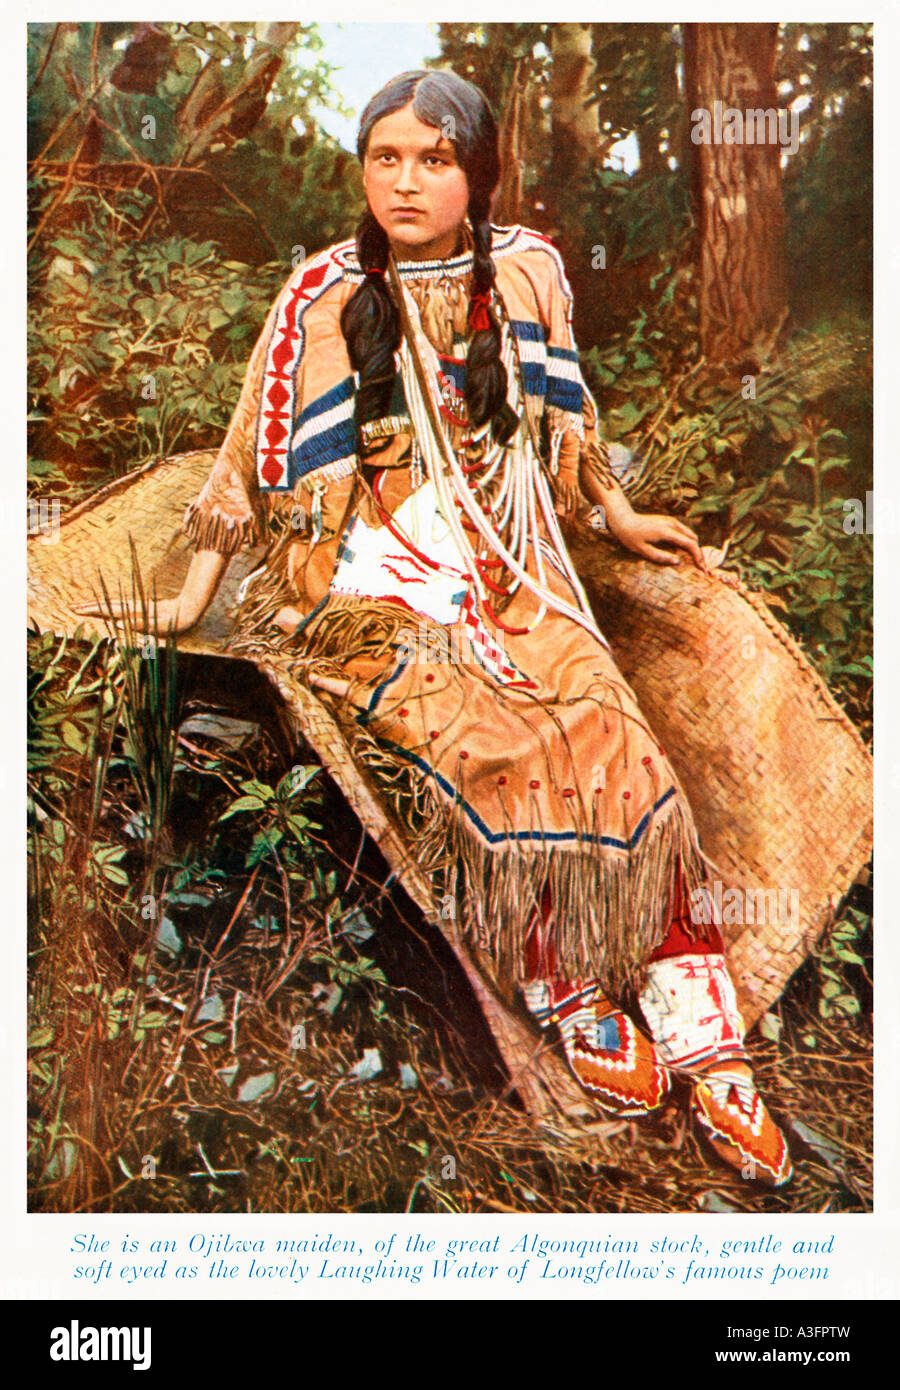 Ojibwa Maiden 1920s foto colorata della Native American lady del grande magazzino Algonquian Foto Stock